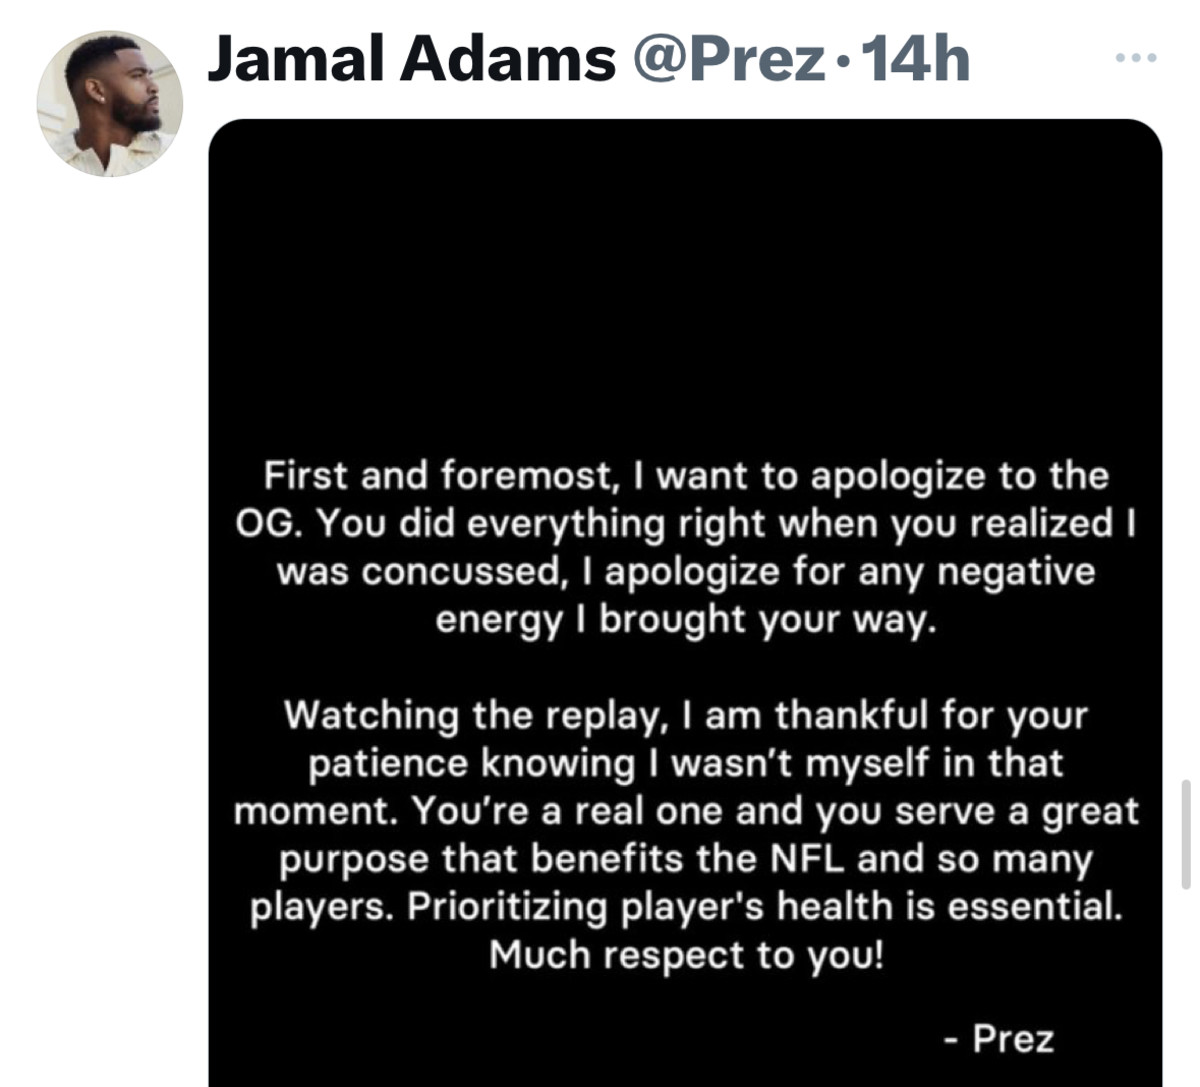 Jamal Adams’ letter